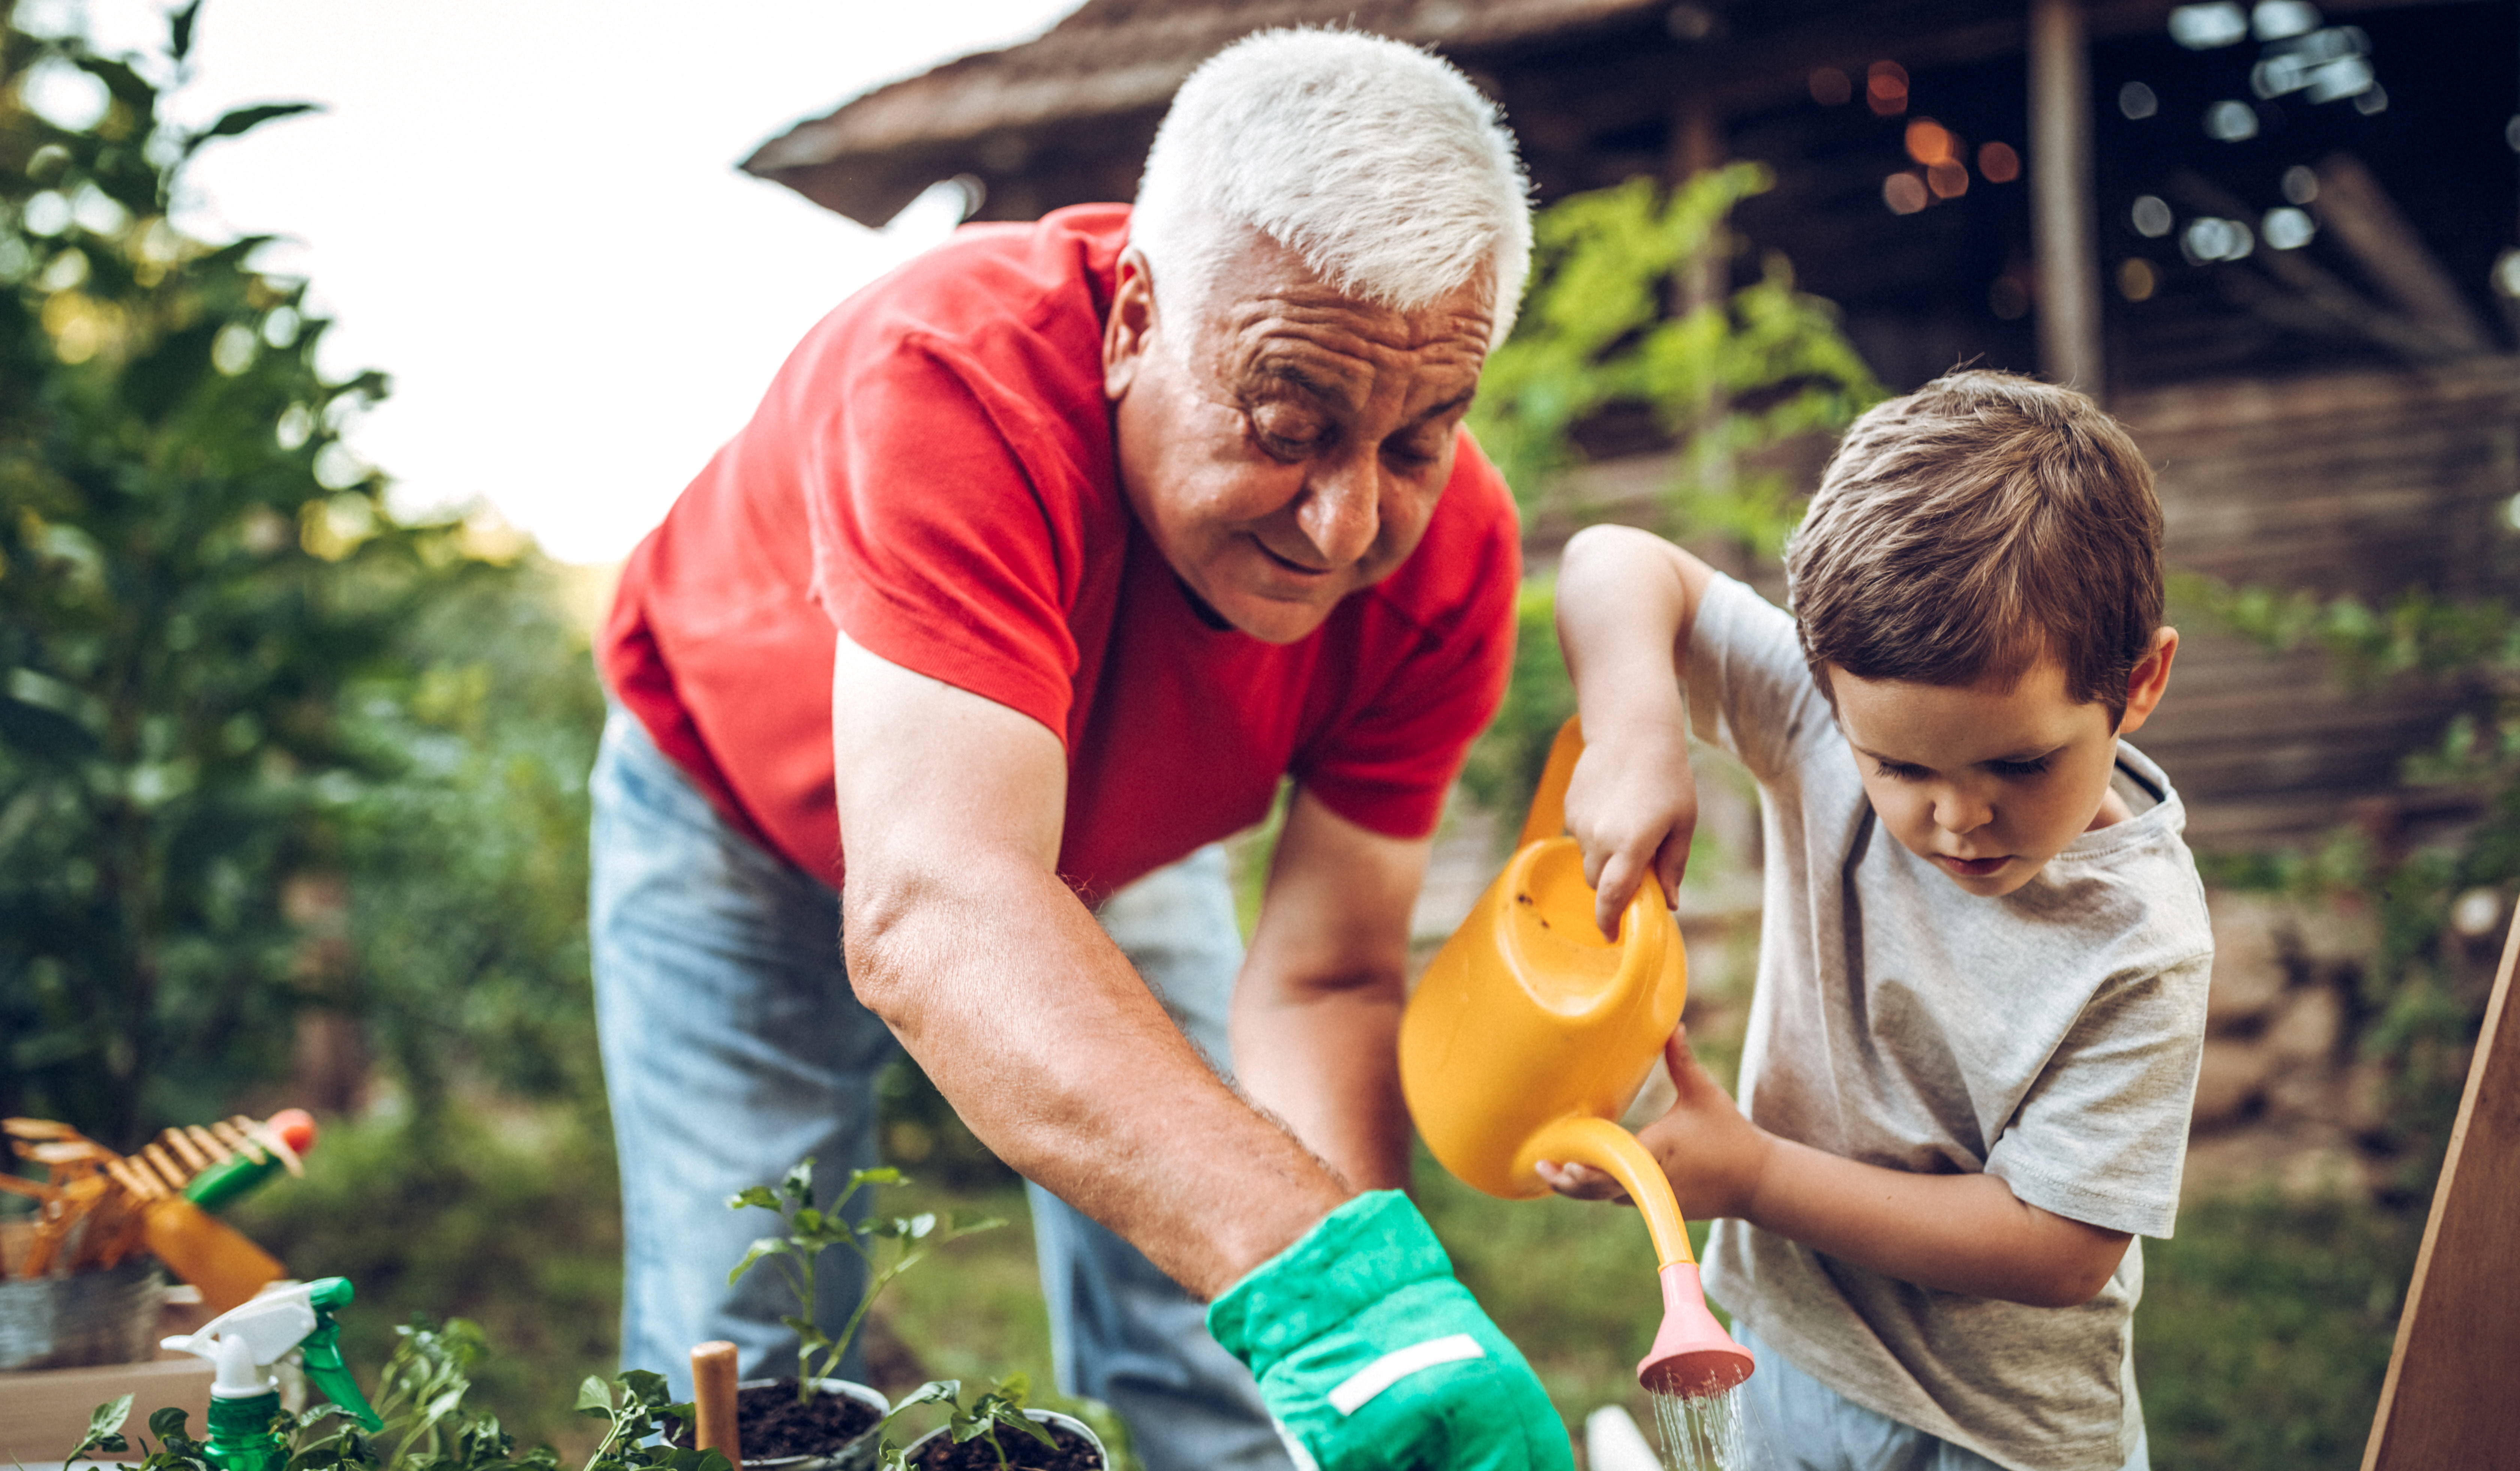 Ein älterer Mann hilft einem jungen Kind mit konzentriertem Blick in einem Garten mit einer Gießkanne Blumen zu gießen. Der Mann beugt sich herab und zeigt auf die Stelle, die das Kind gießen soll. Eclipse Images via Getty Images